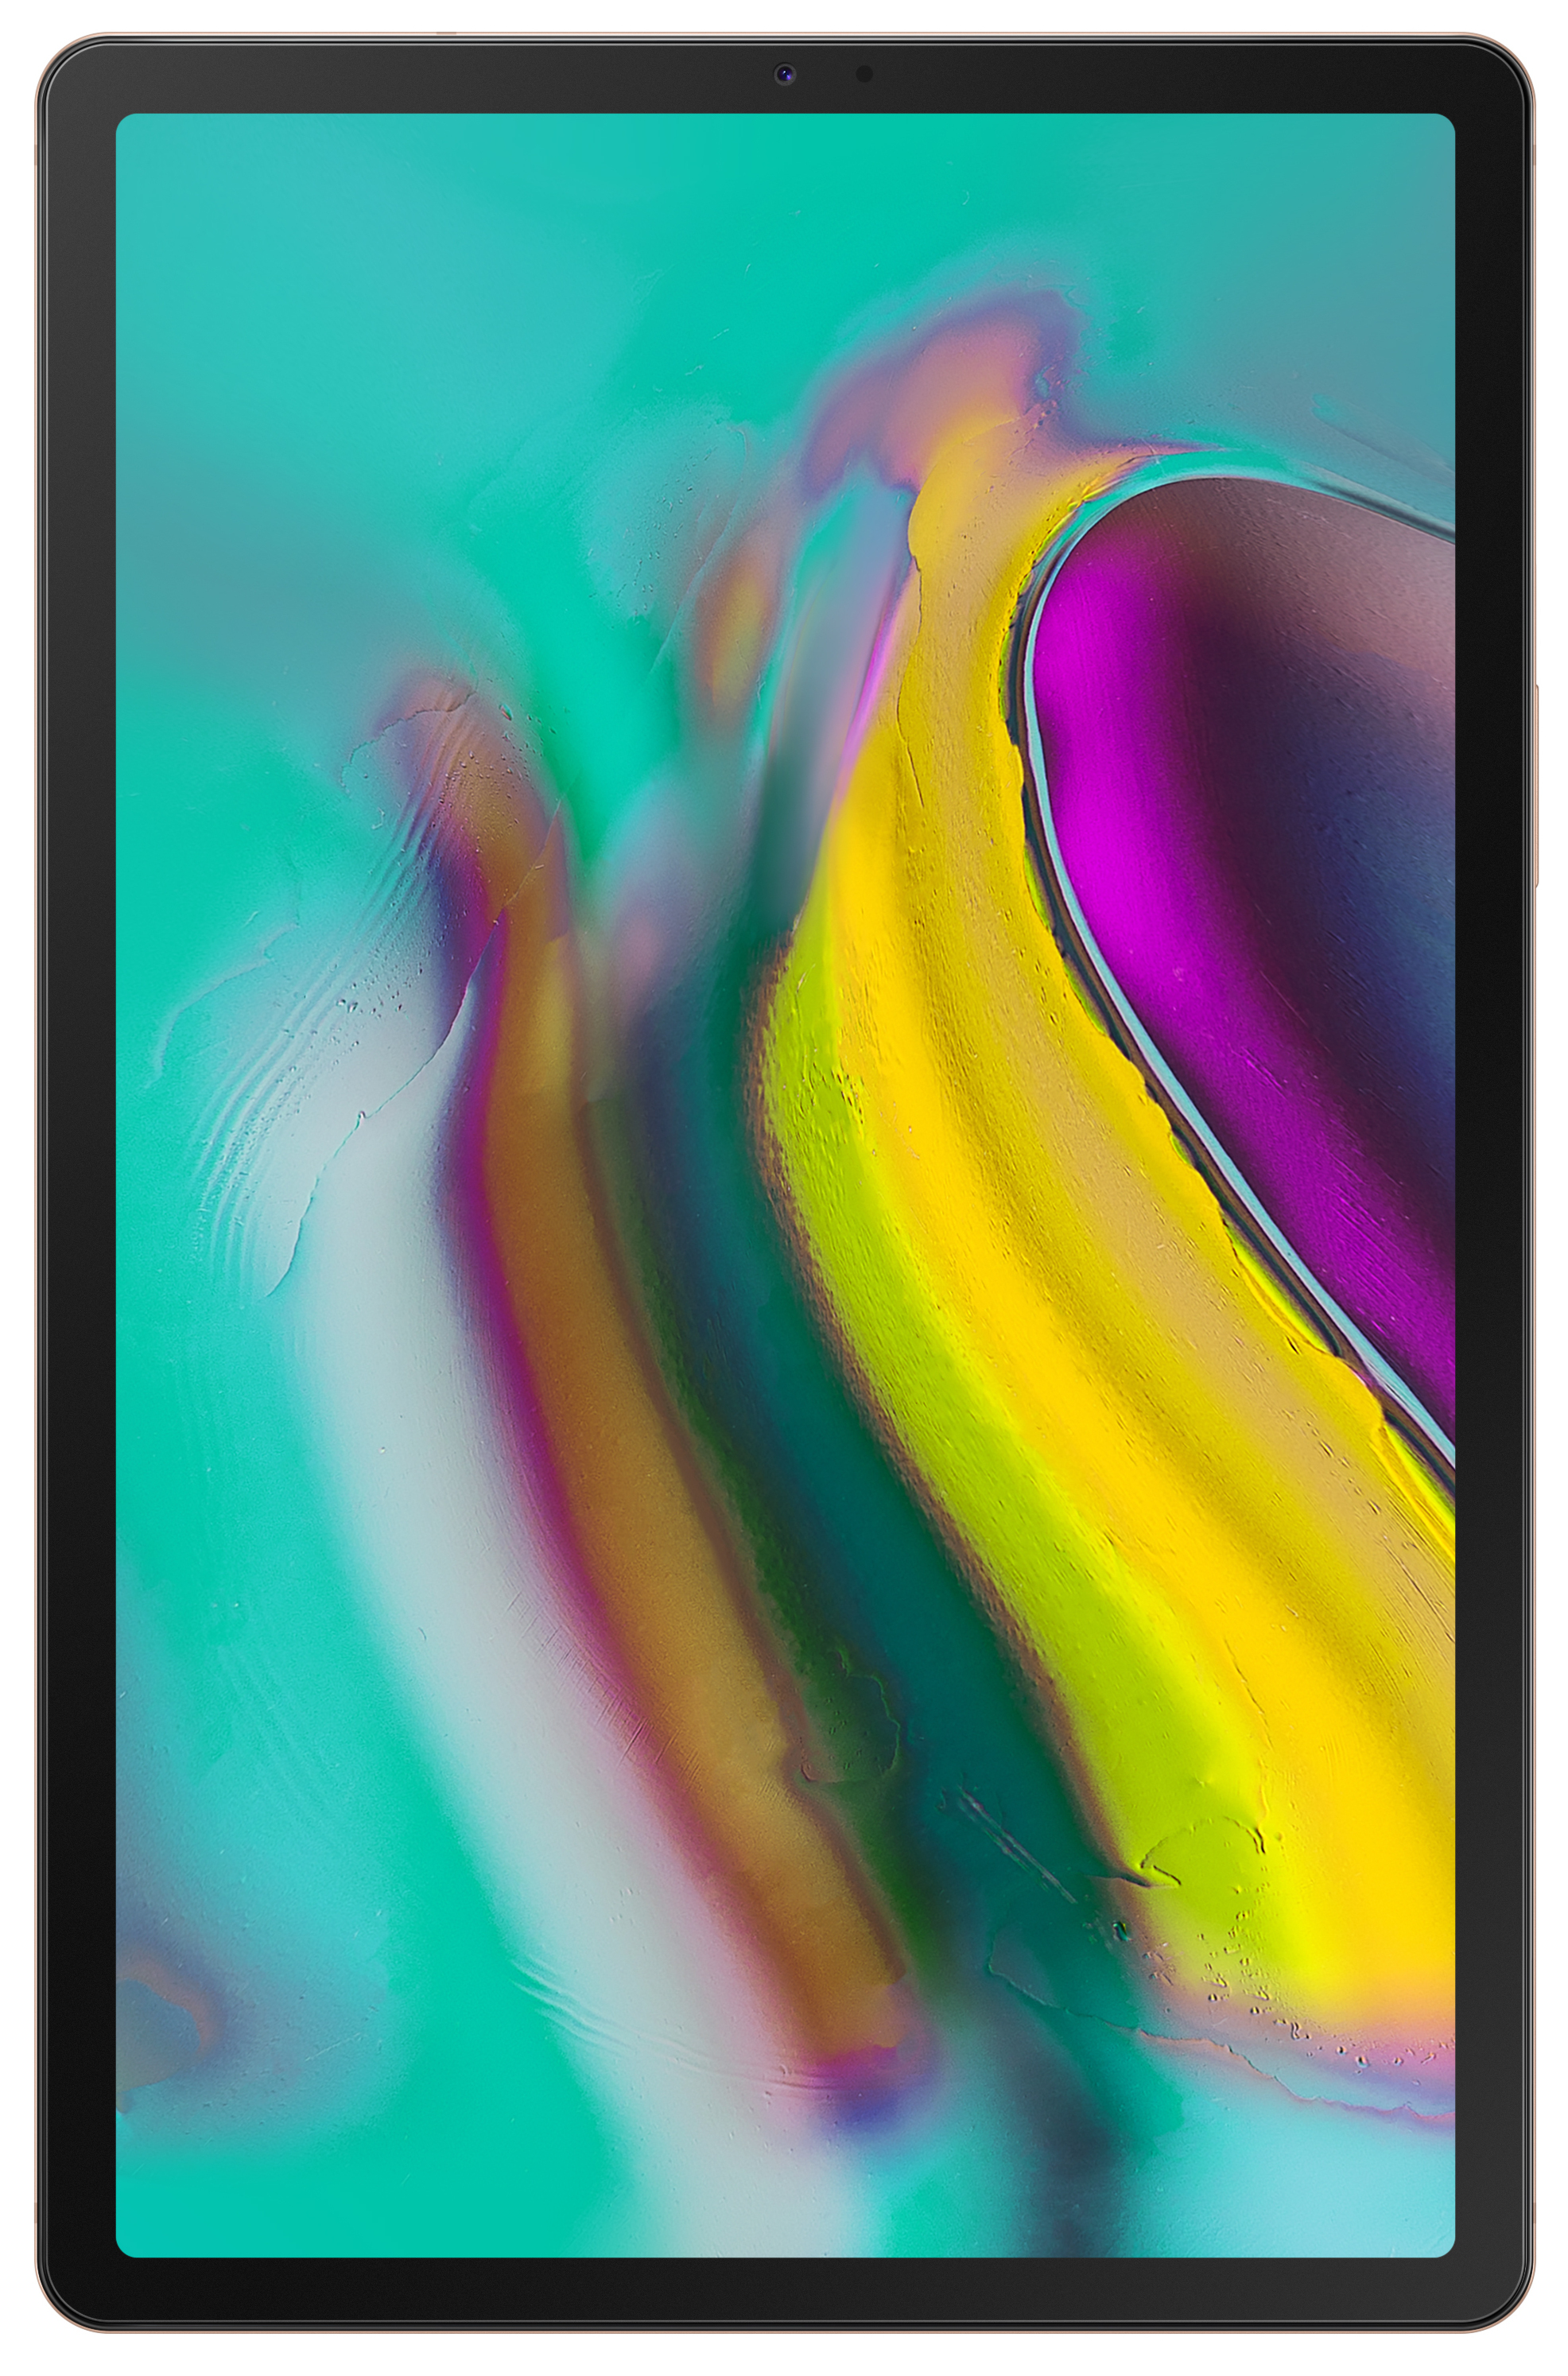 Samsung Galaxy Tab S5e 10.5-Inch 64GB Wi-Fi Tablet - Gold